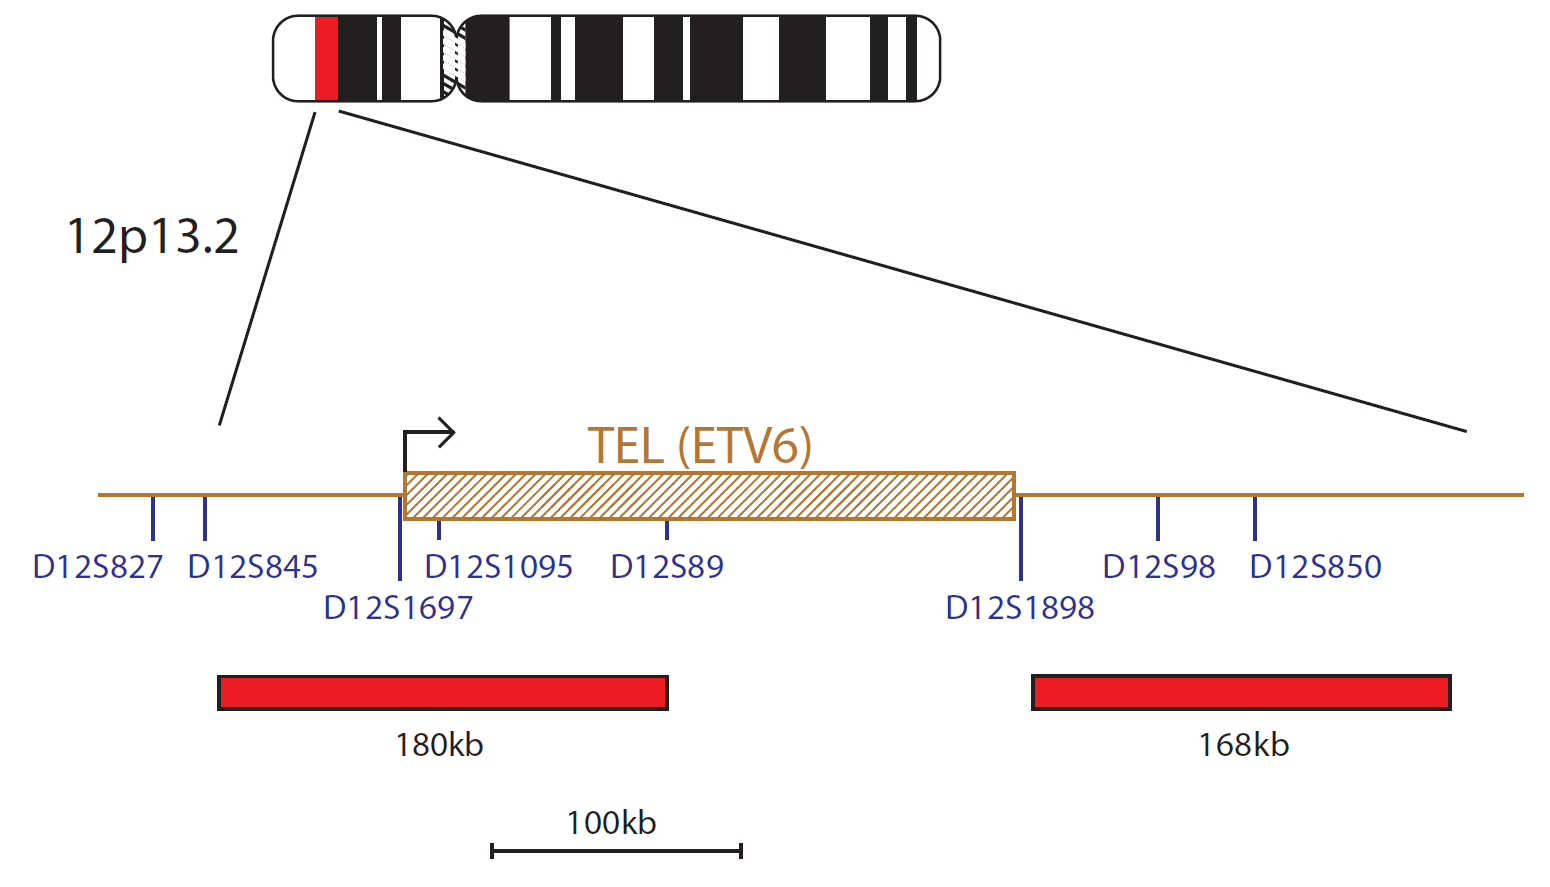 TEL/AML (ETV6 / RUNX1) Translocation